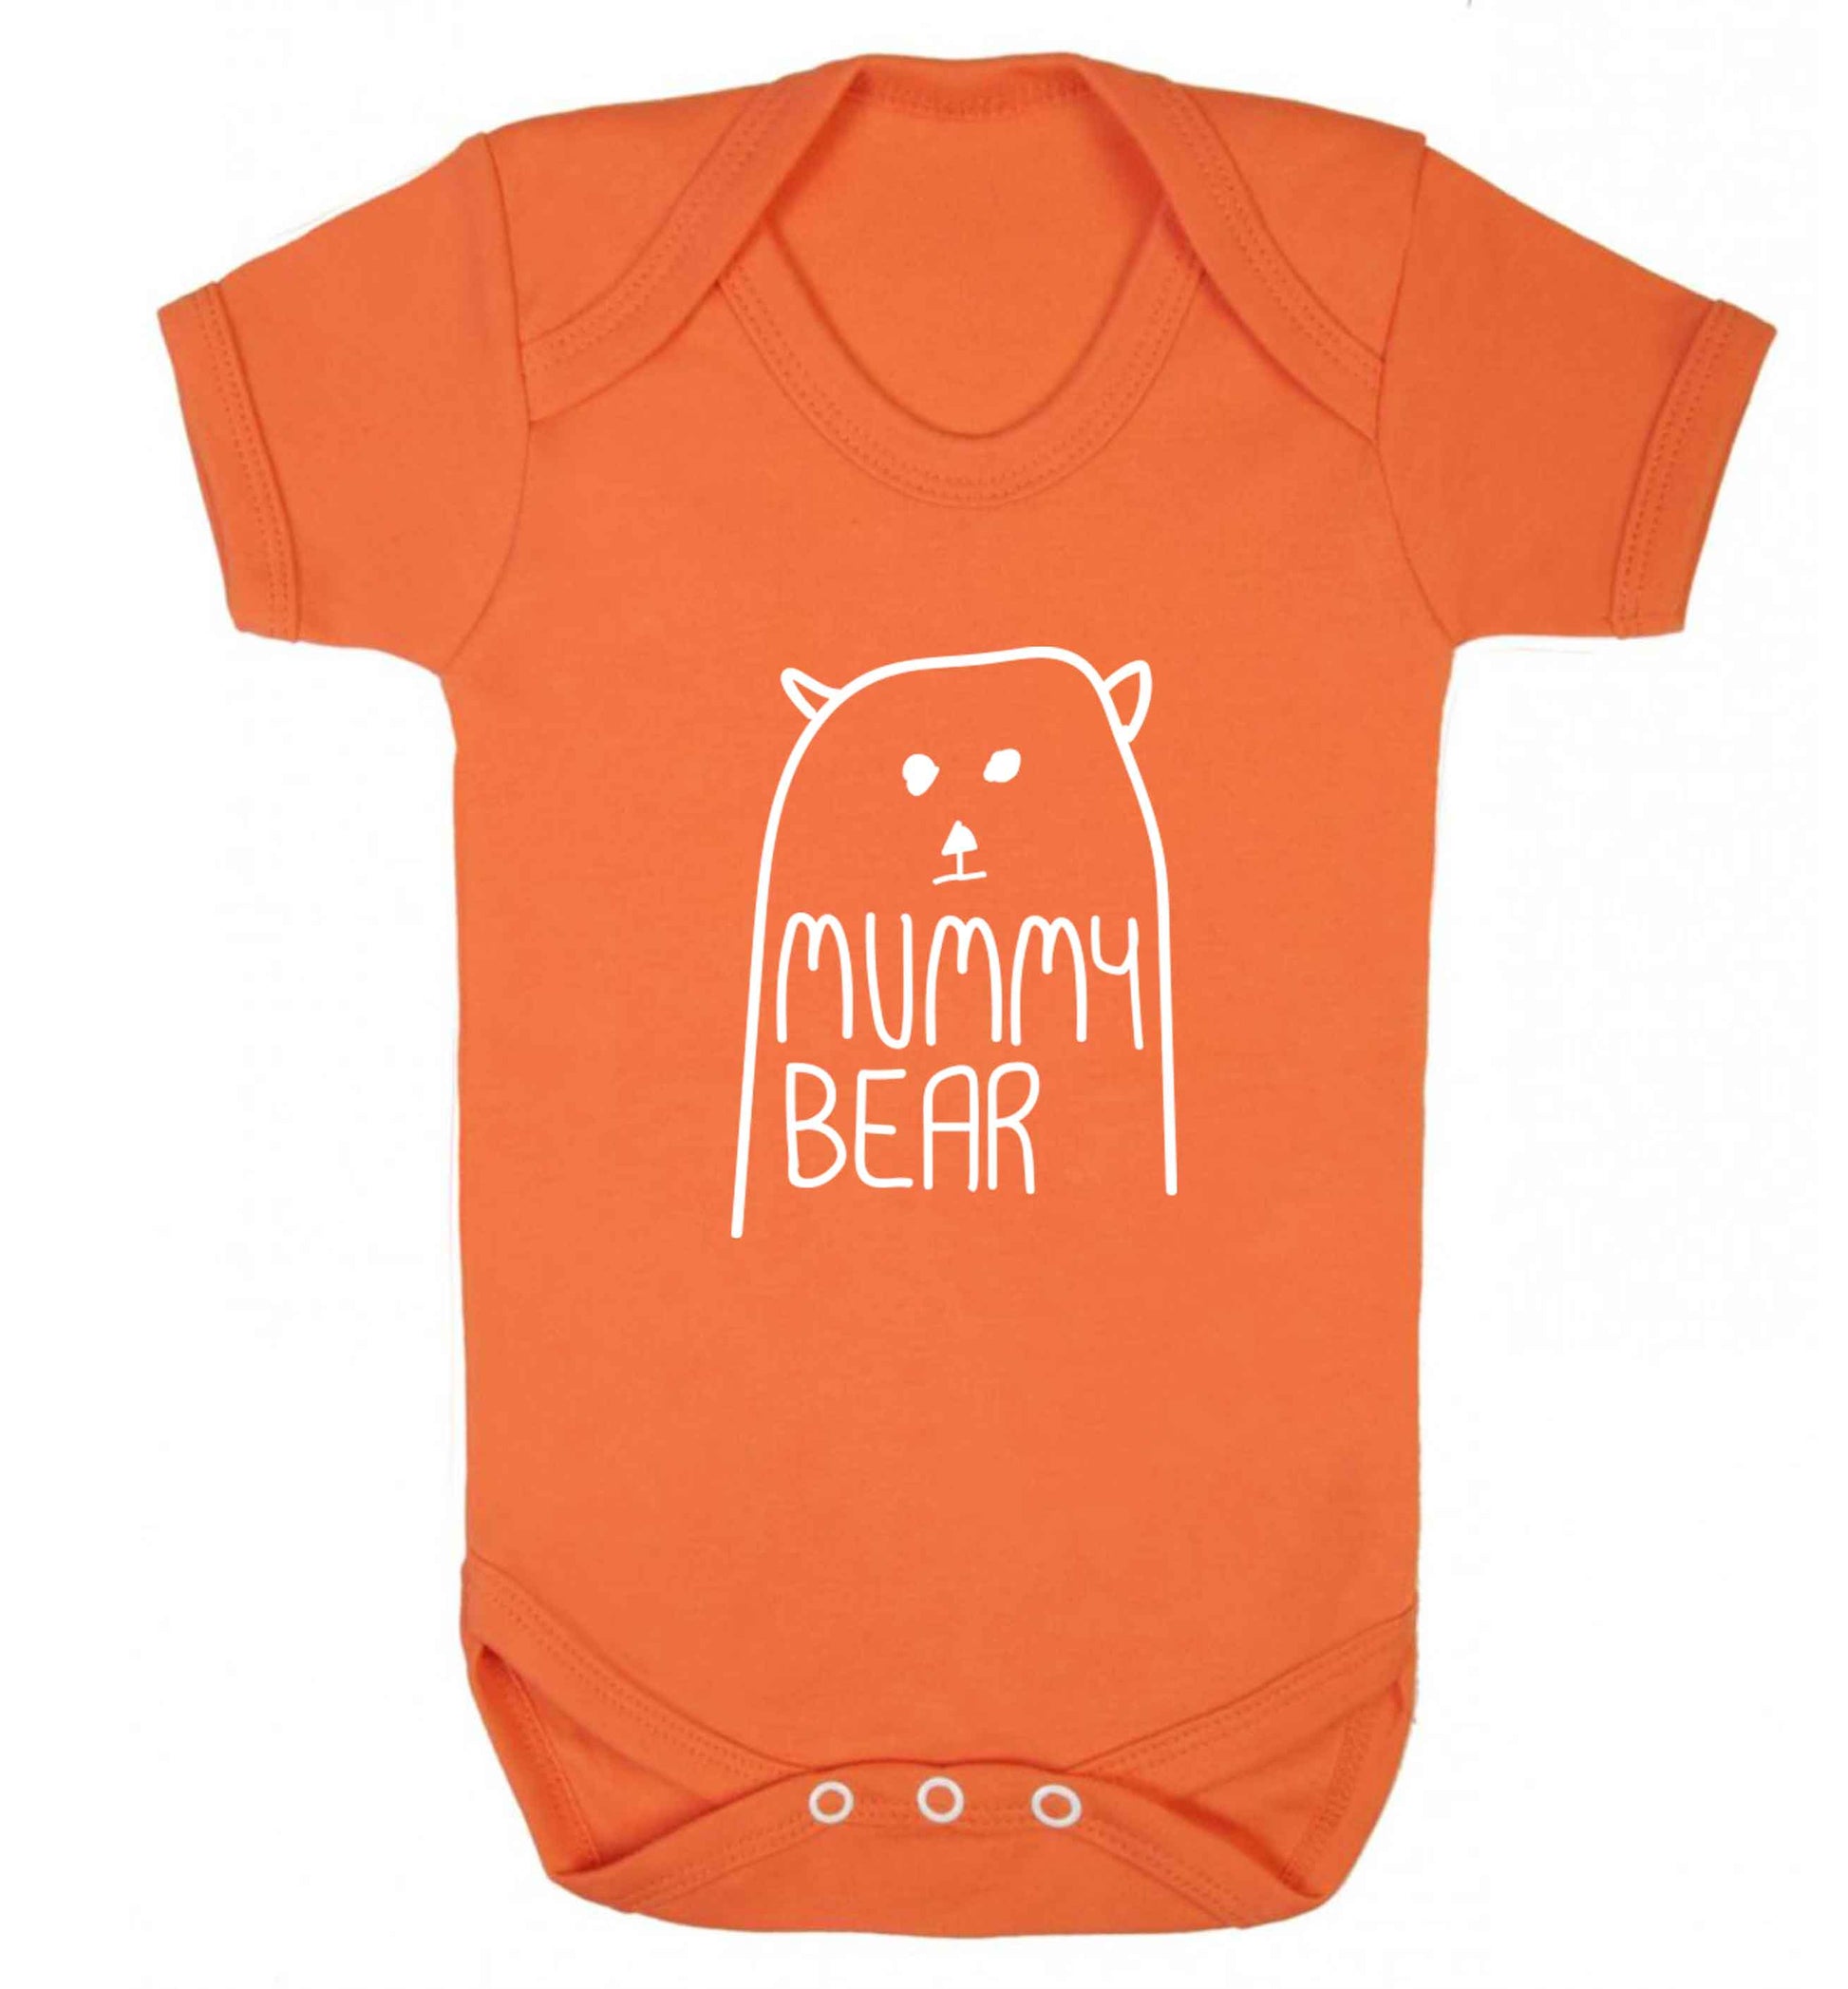 Mummy bear baby vest orange 18-24 months